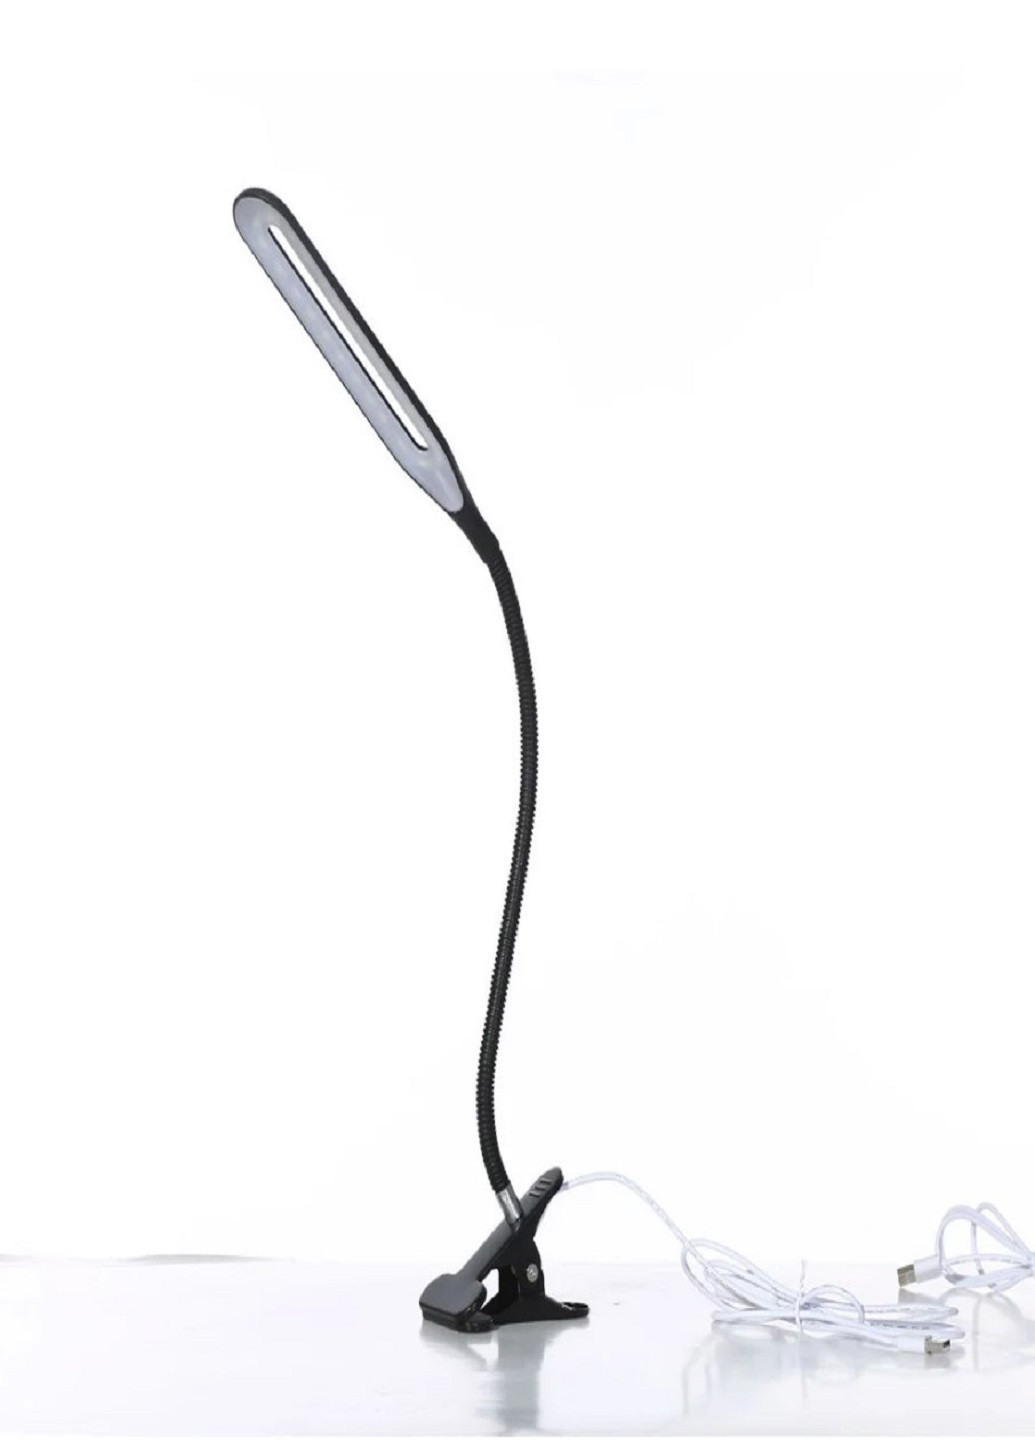 Настільна лампа світлодіодна на прищіпці гнучка 22 LED діода чорна XSD 206 USB кабель VTech (252481177)